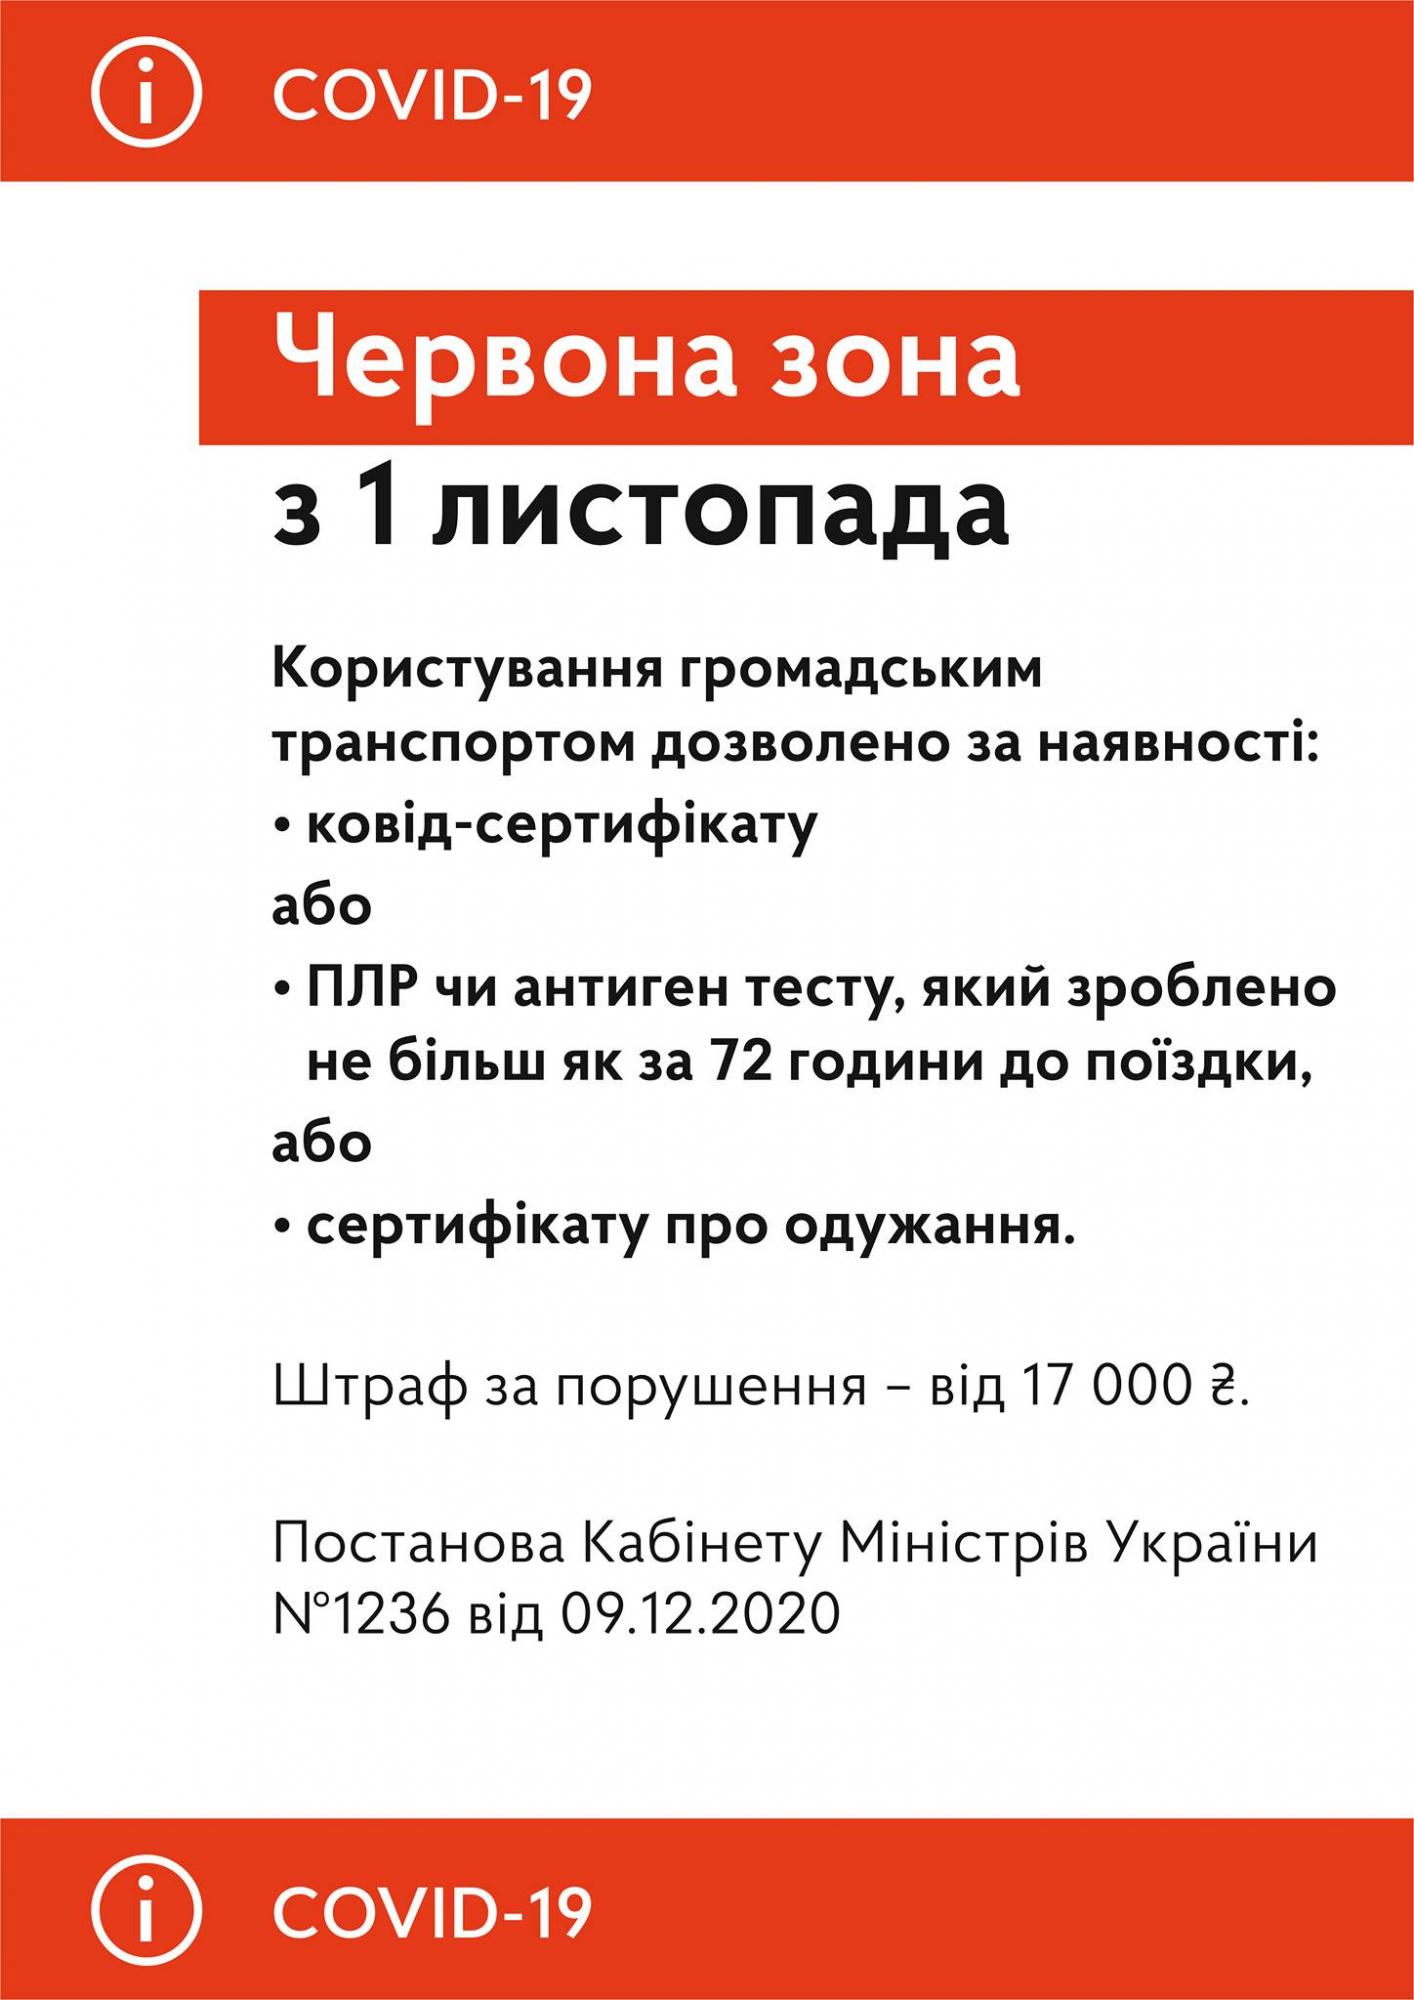 У метро Києва назвали суму штрафу за користування транспортом без COVID-сертифіката